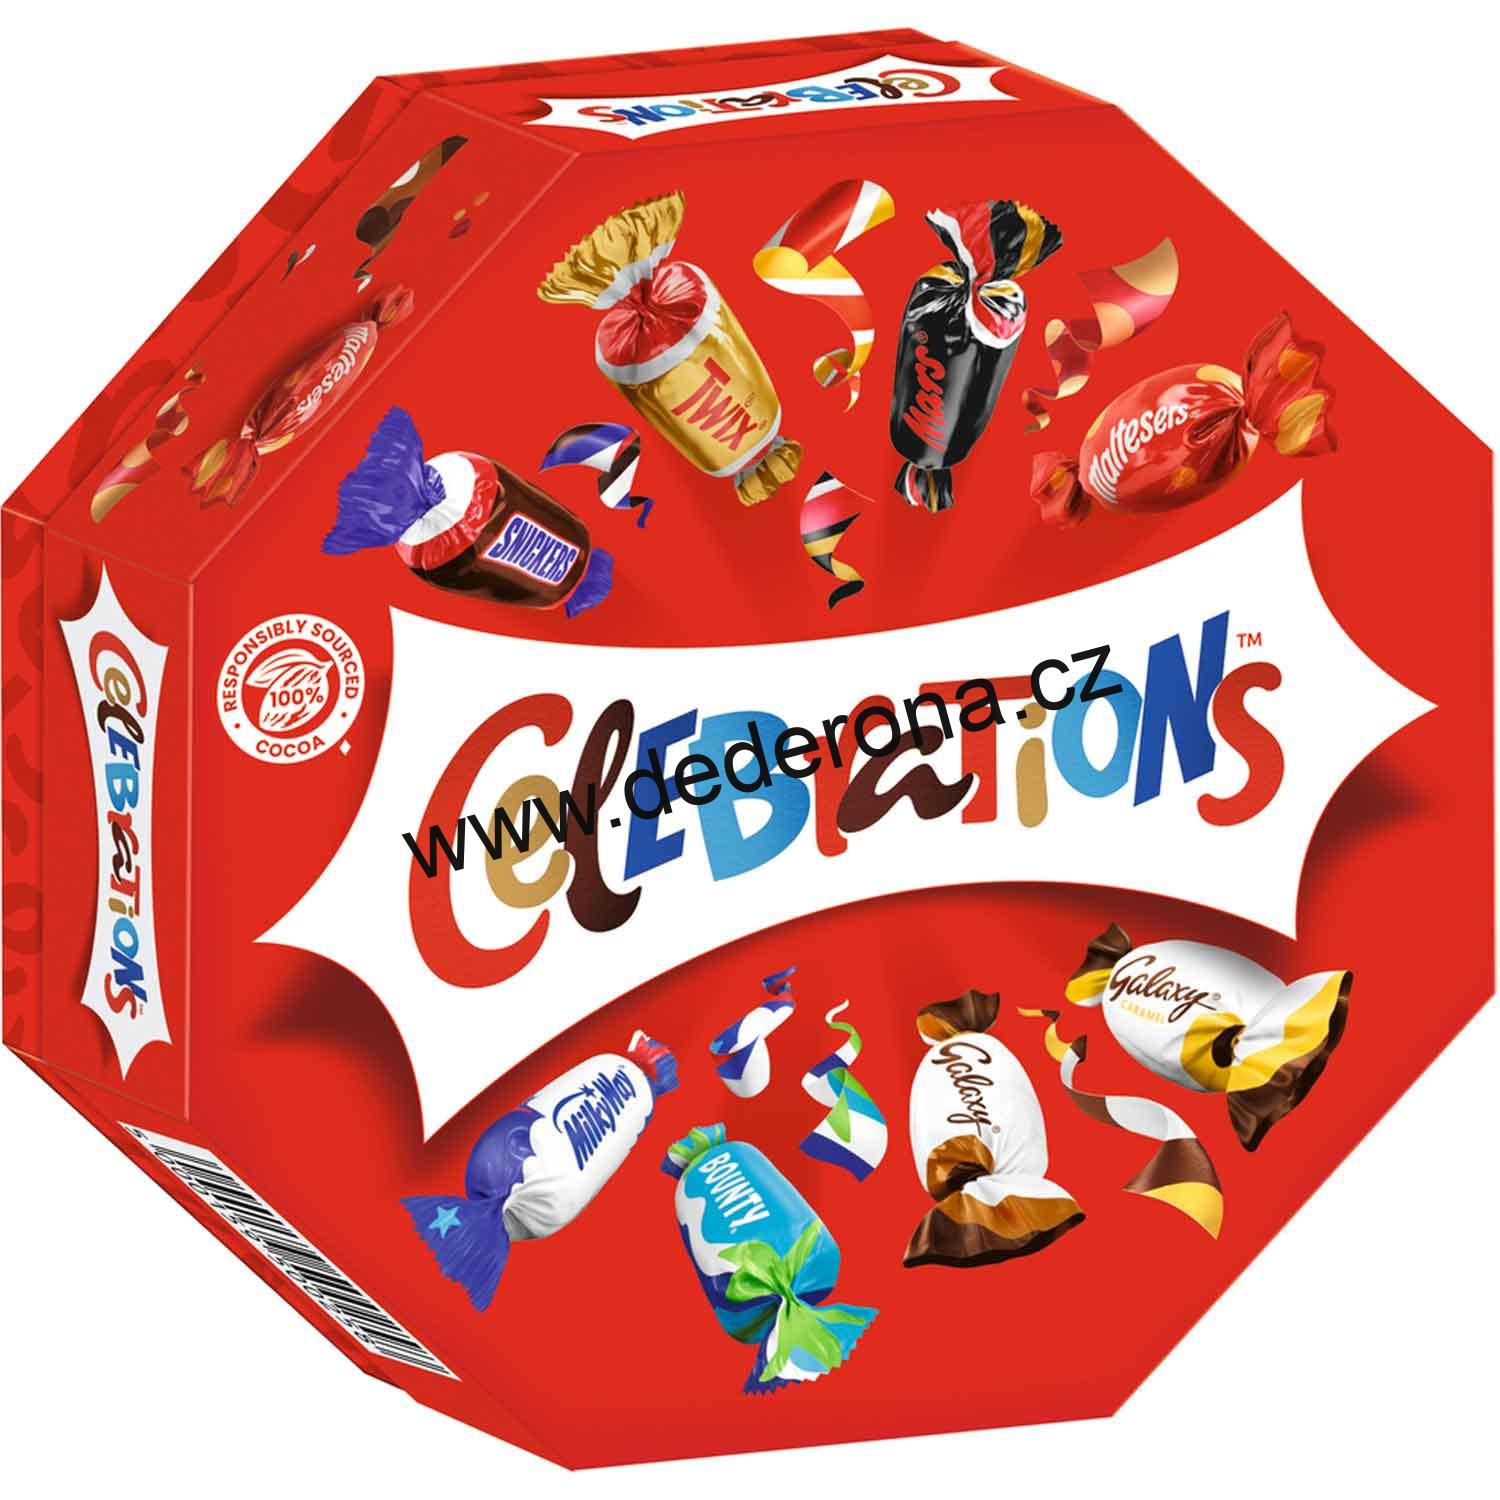 Celebrations - Čokoládové bonbóny MIX 8 druhů 186g - Německo!